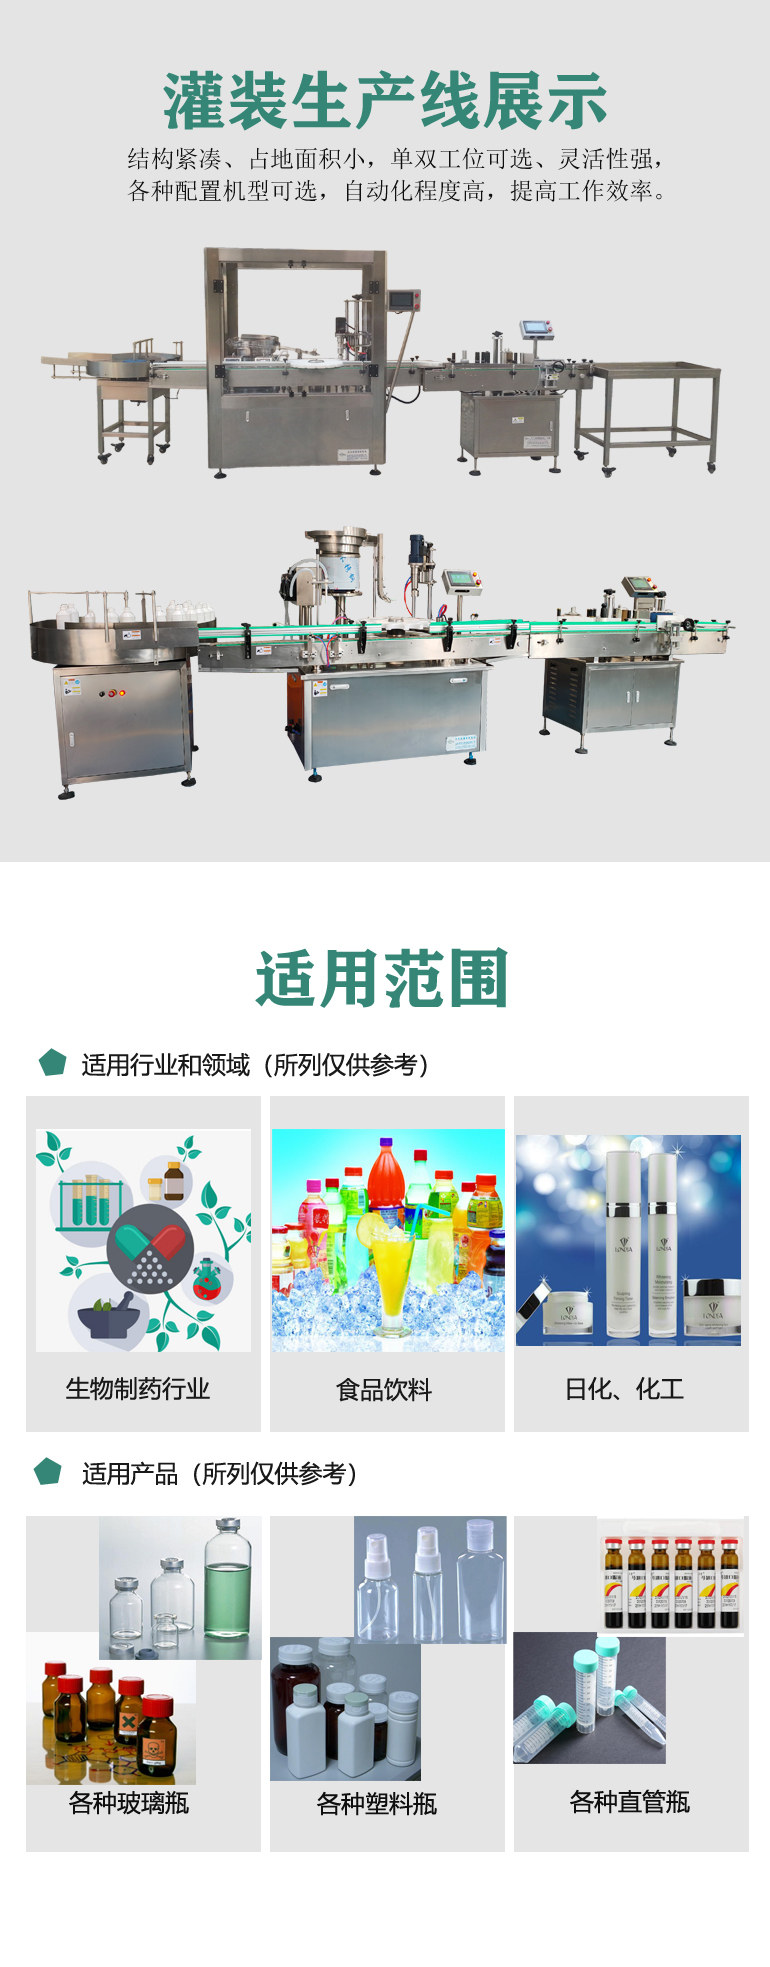 武汉半自动消毒液生产线设备